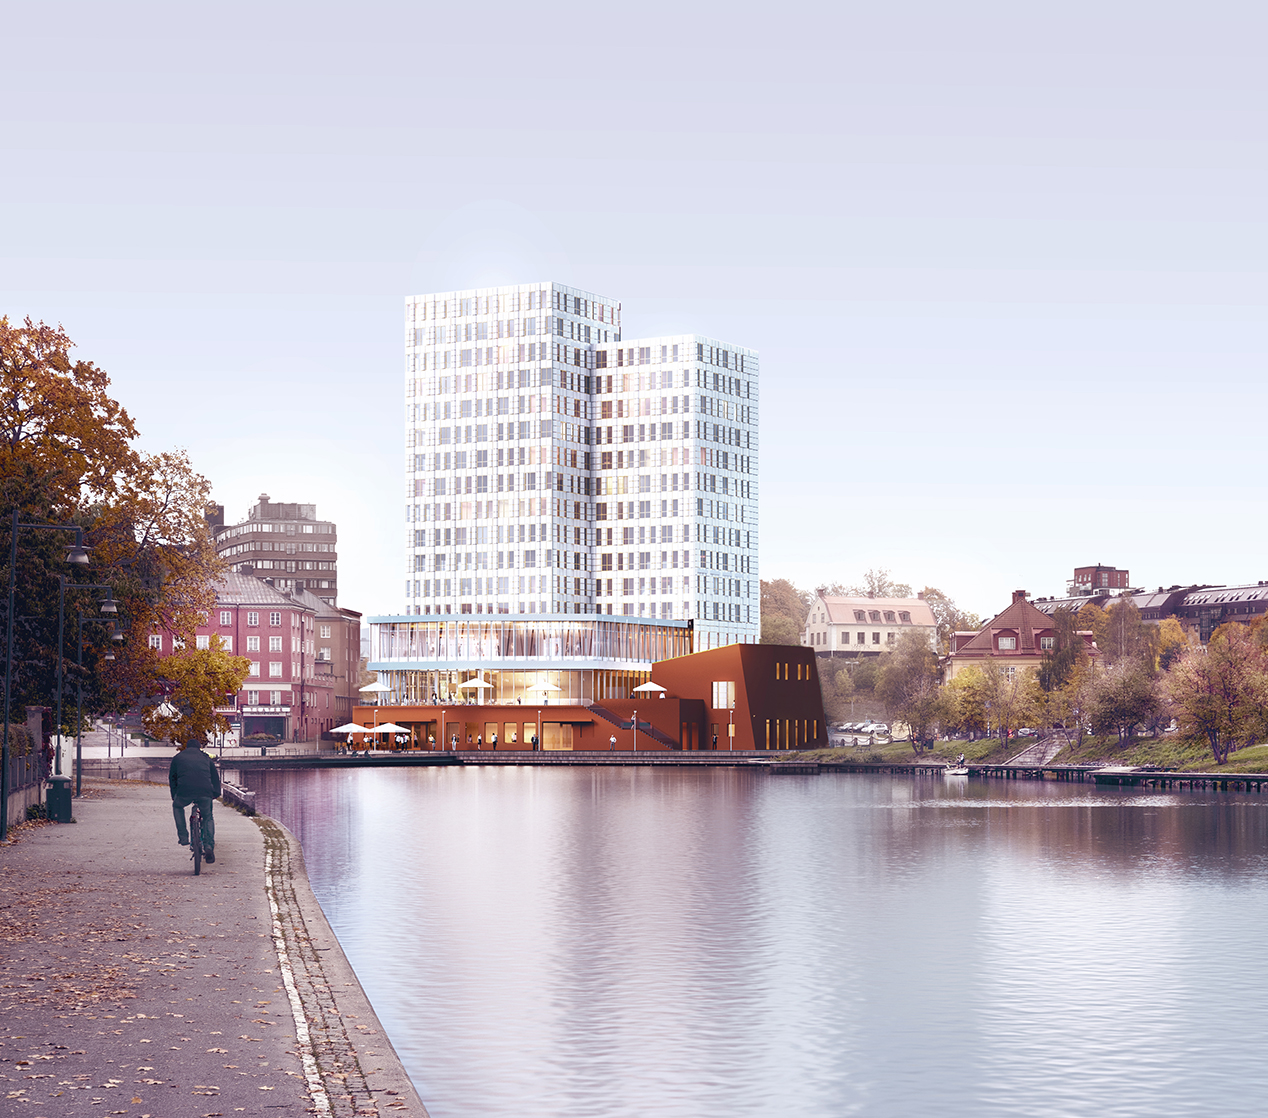 Stadsrum Fastigheter tecknar hyresavtal med Winn Hotel Group om ett nytt hotell i centrala Södertälje.